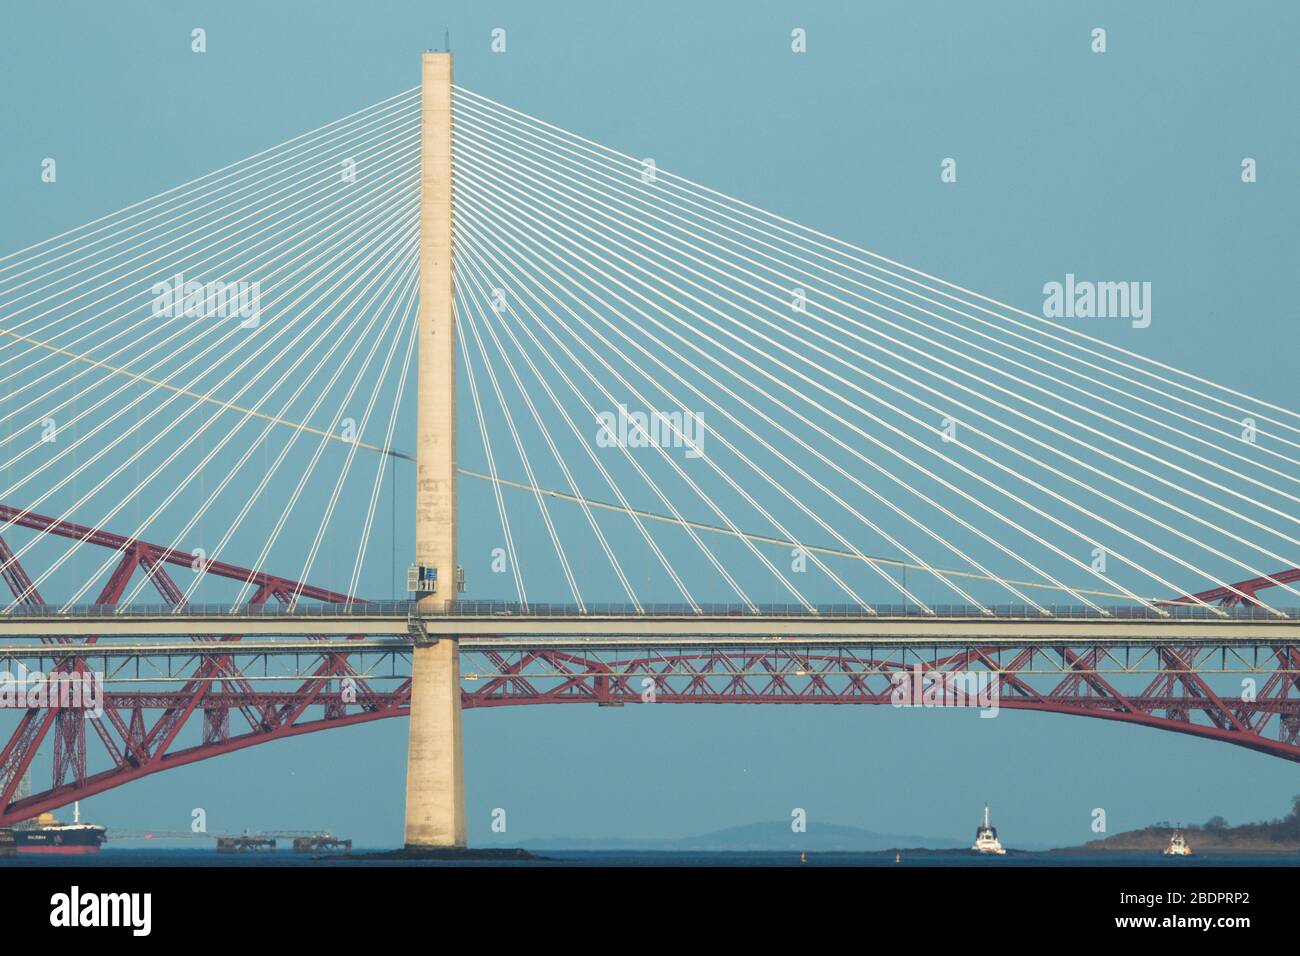 Grangemouth, Royaume-Uni. 8 avril 2020. Photo : le Queensferry Crossing, le plus récent pont d'Écosse et le troisième Firth of Forth Crossing qui relie Fife et Lothian et qui transporte l'autoroute M90, qui s'étend sur 1.7 km, est le plus long pont à trois tours et à passage par câble du monde et de loin le plus grand à avoir des câbles qui traversent le milieu de la portée. Cette conception innovante offre une résistance et une rigidité supplémentaires, permettant aux tours et à la terrasse d'être plus minces et élégantes. Crédit : Colin Fisher/Alay Live News. Banque D'Images